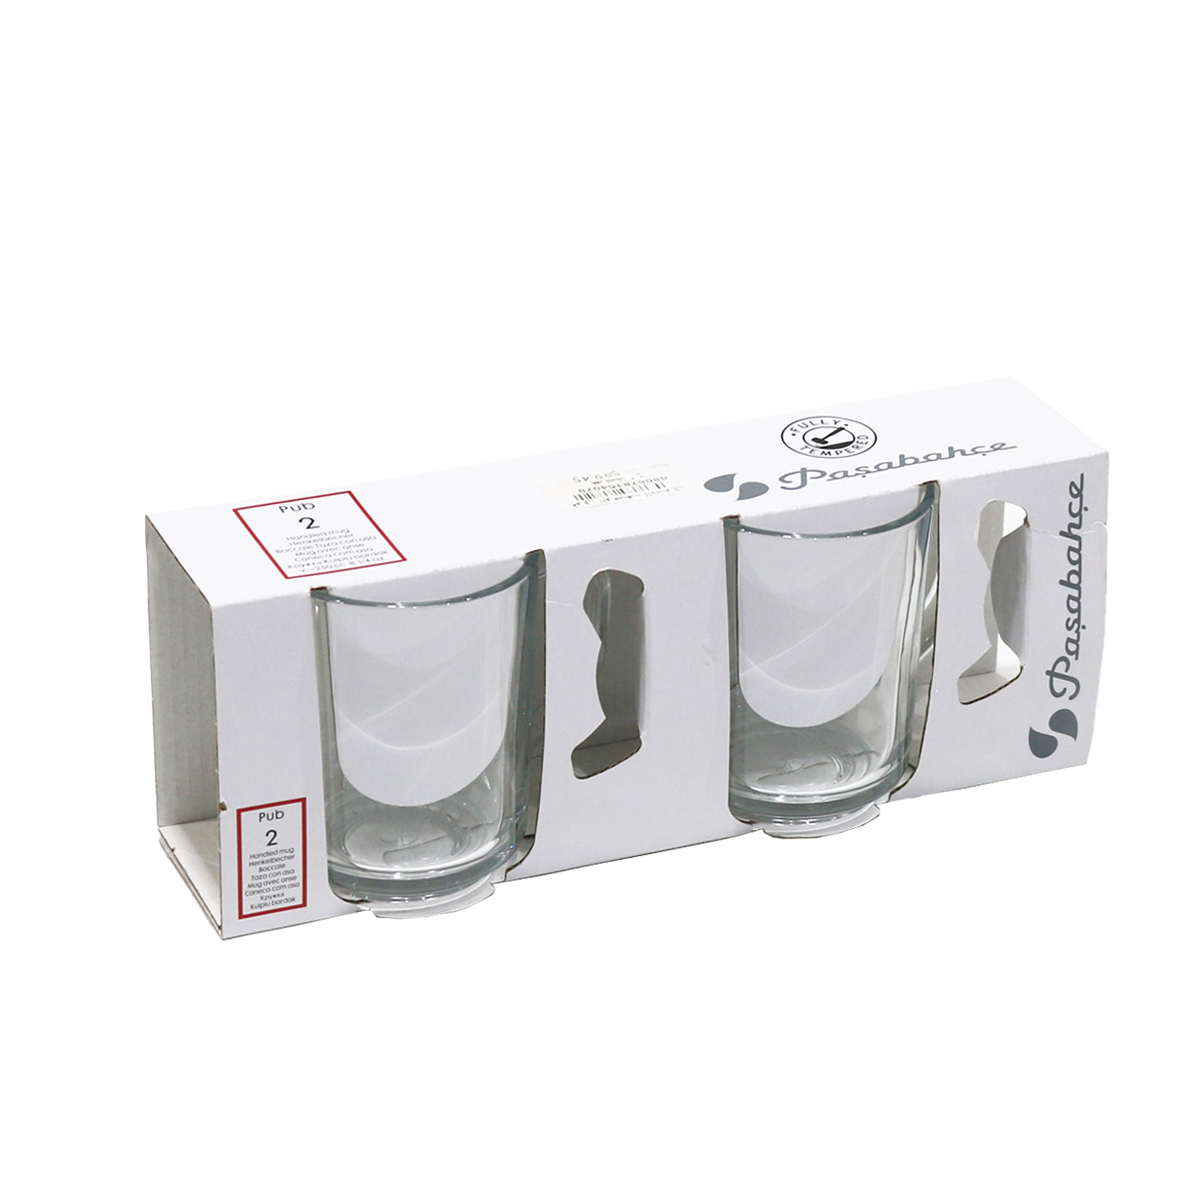 55029 100% Glass Cup (For Tea) Pasabahce Pub 2Pcs